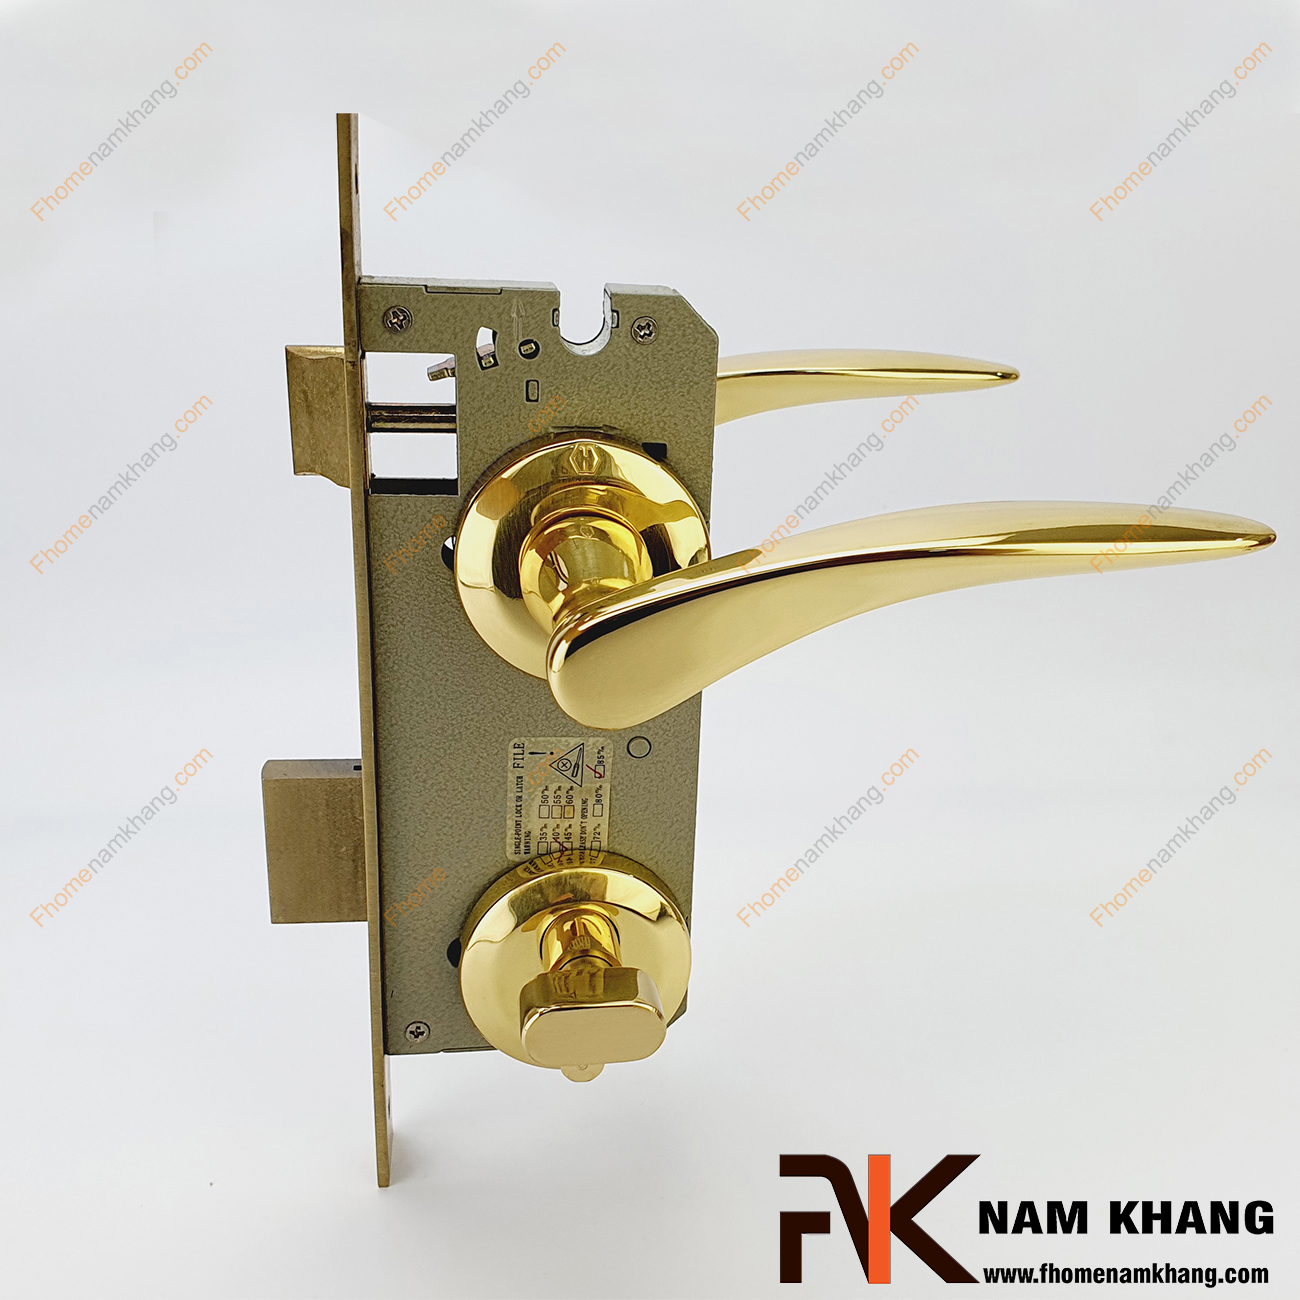 Khóa cửa phân thể bằng đồng cao cấp màu vàng bóng NK550-24K có thiết kế phần ốp khóa và tay gạt riêng biệt, nhỏ gọn và tạo được sự nổi bật độc đáo.